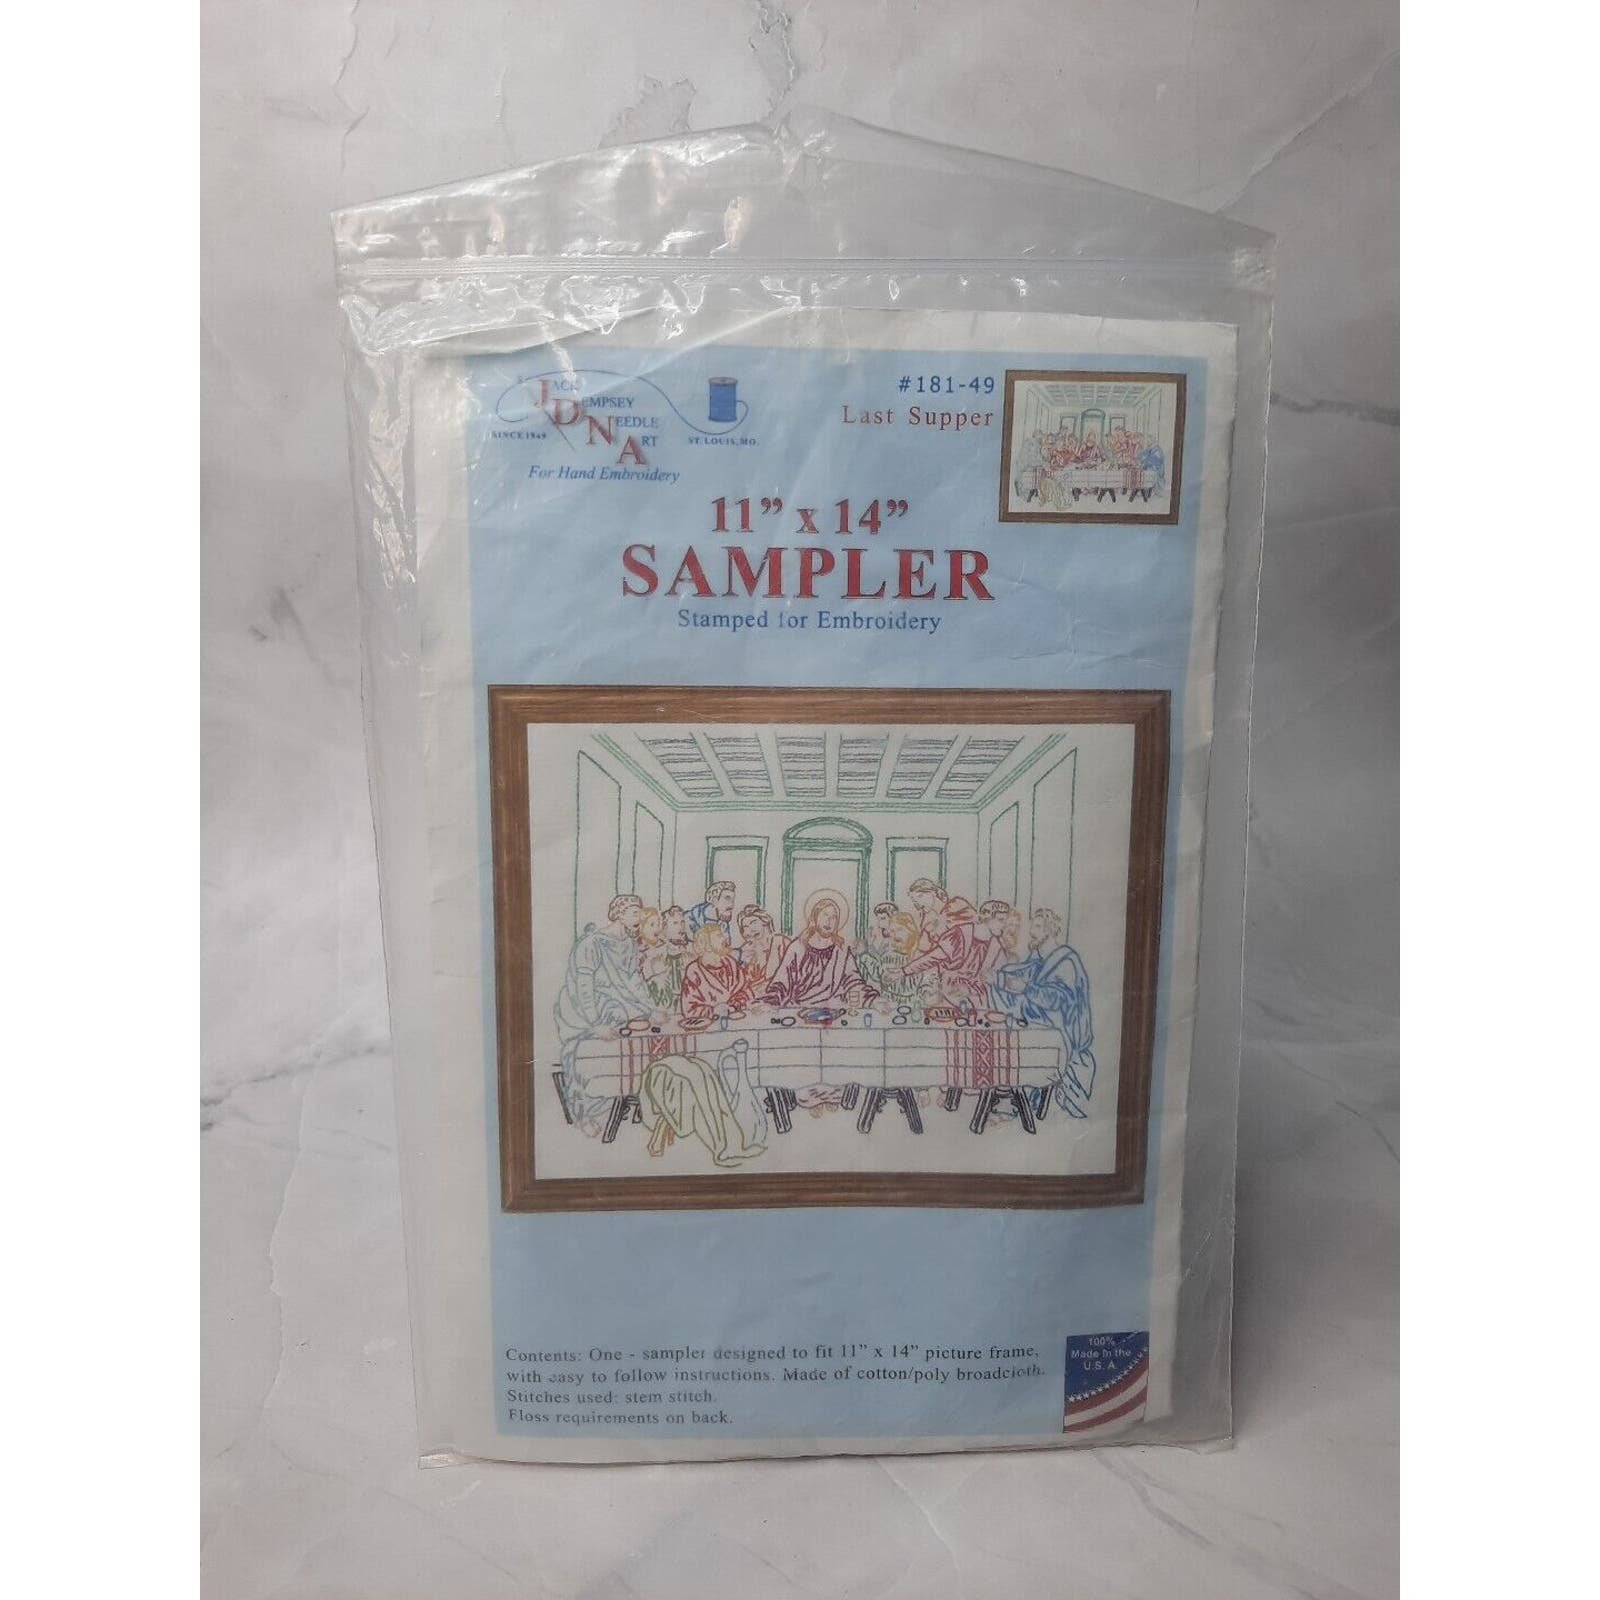 Jack Dempsey Needle Art Last Supper Sampler Stamped For Embroidery 11x14 kllPFdT6r